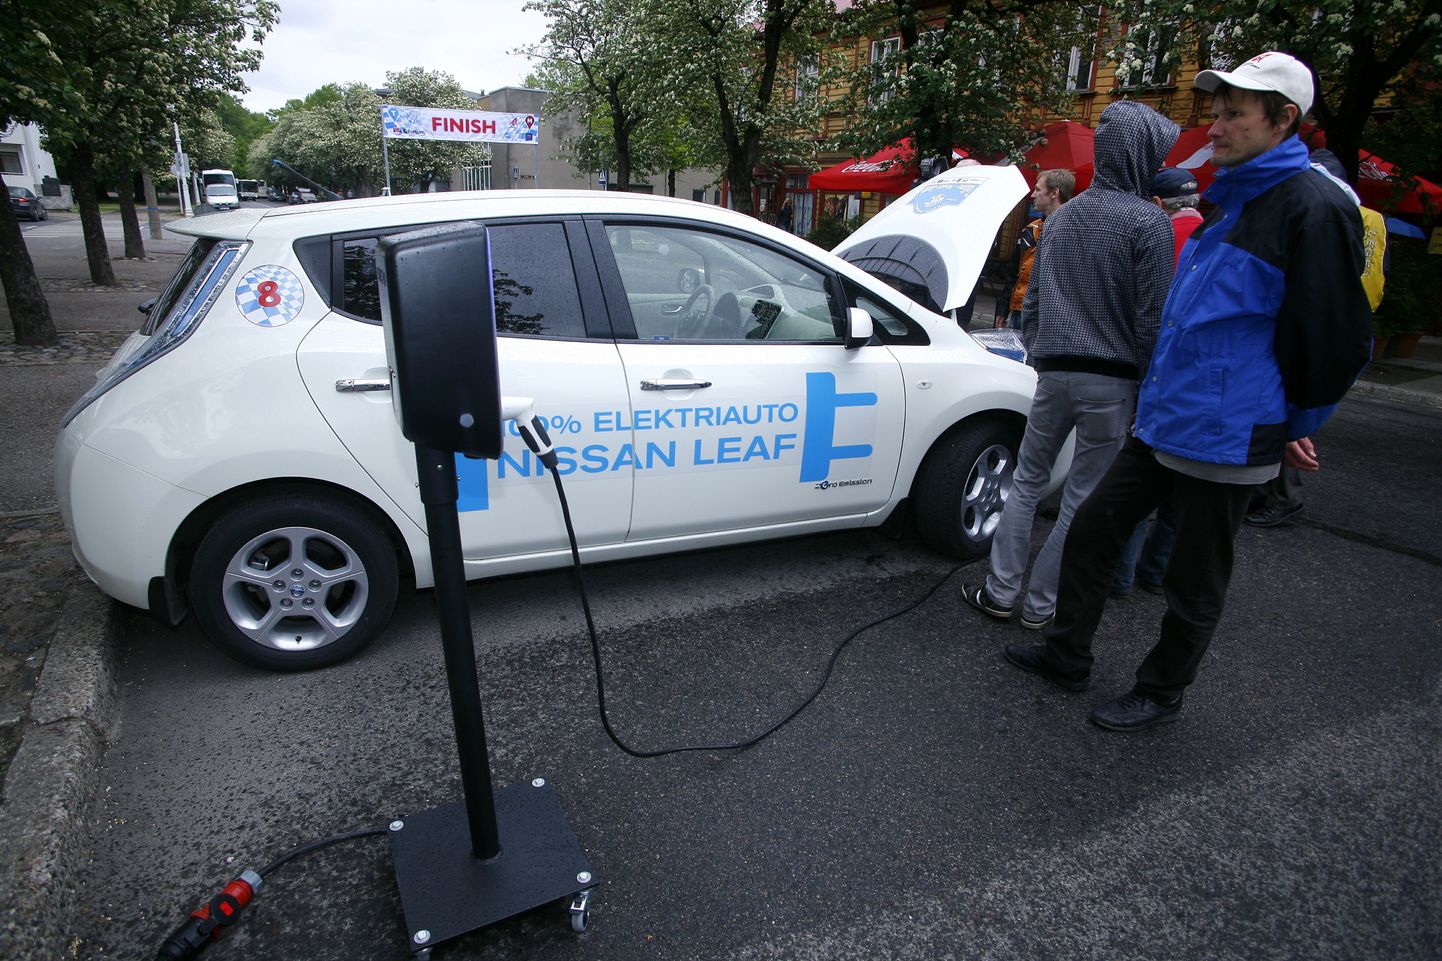 Elektriautode tuuril tutvustatakse Mitsubishi i-MiEVi, Nissan Leafi (pildil) ja Peugeot iOni. Foto on illustreeriv.